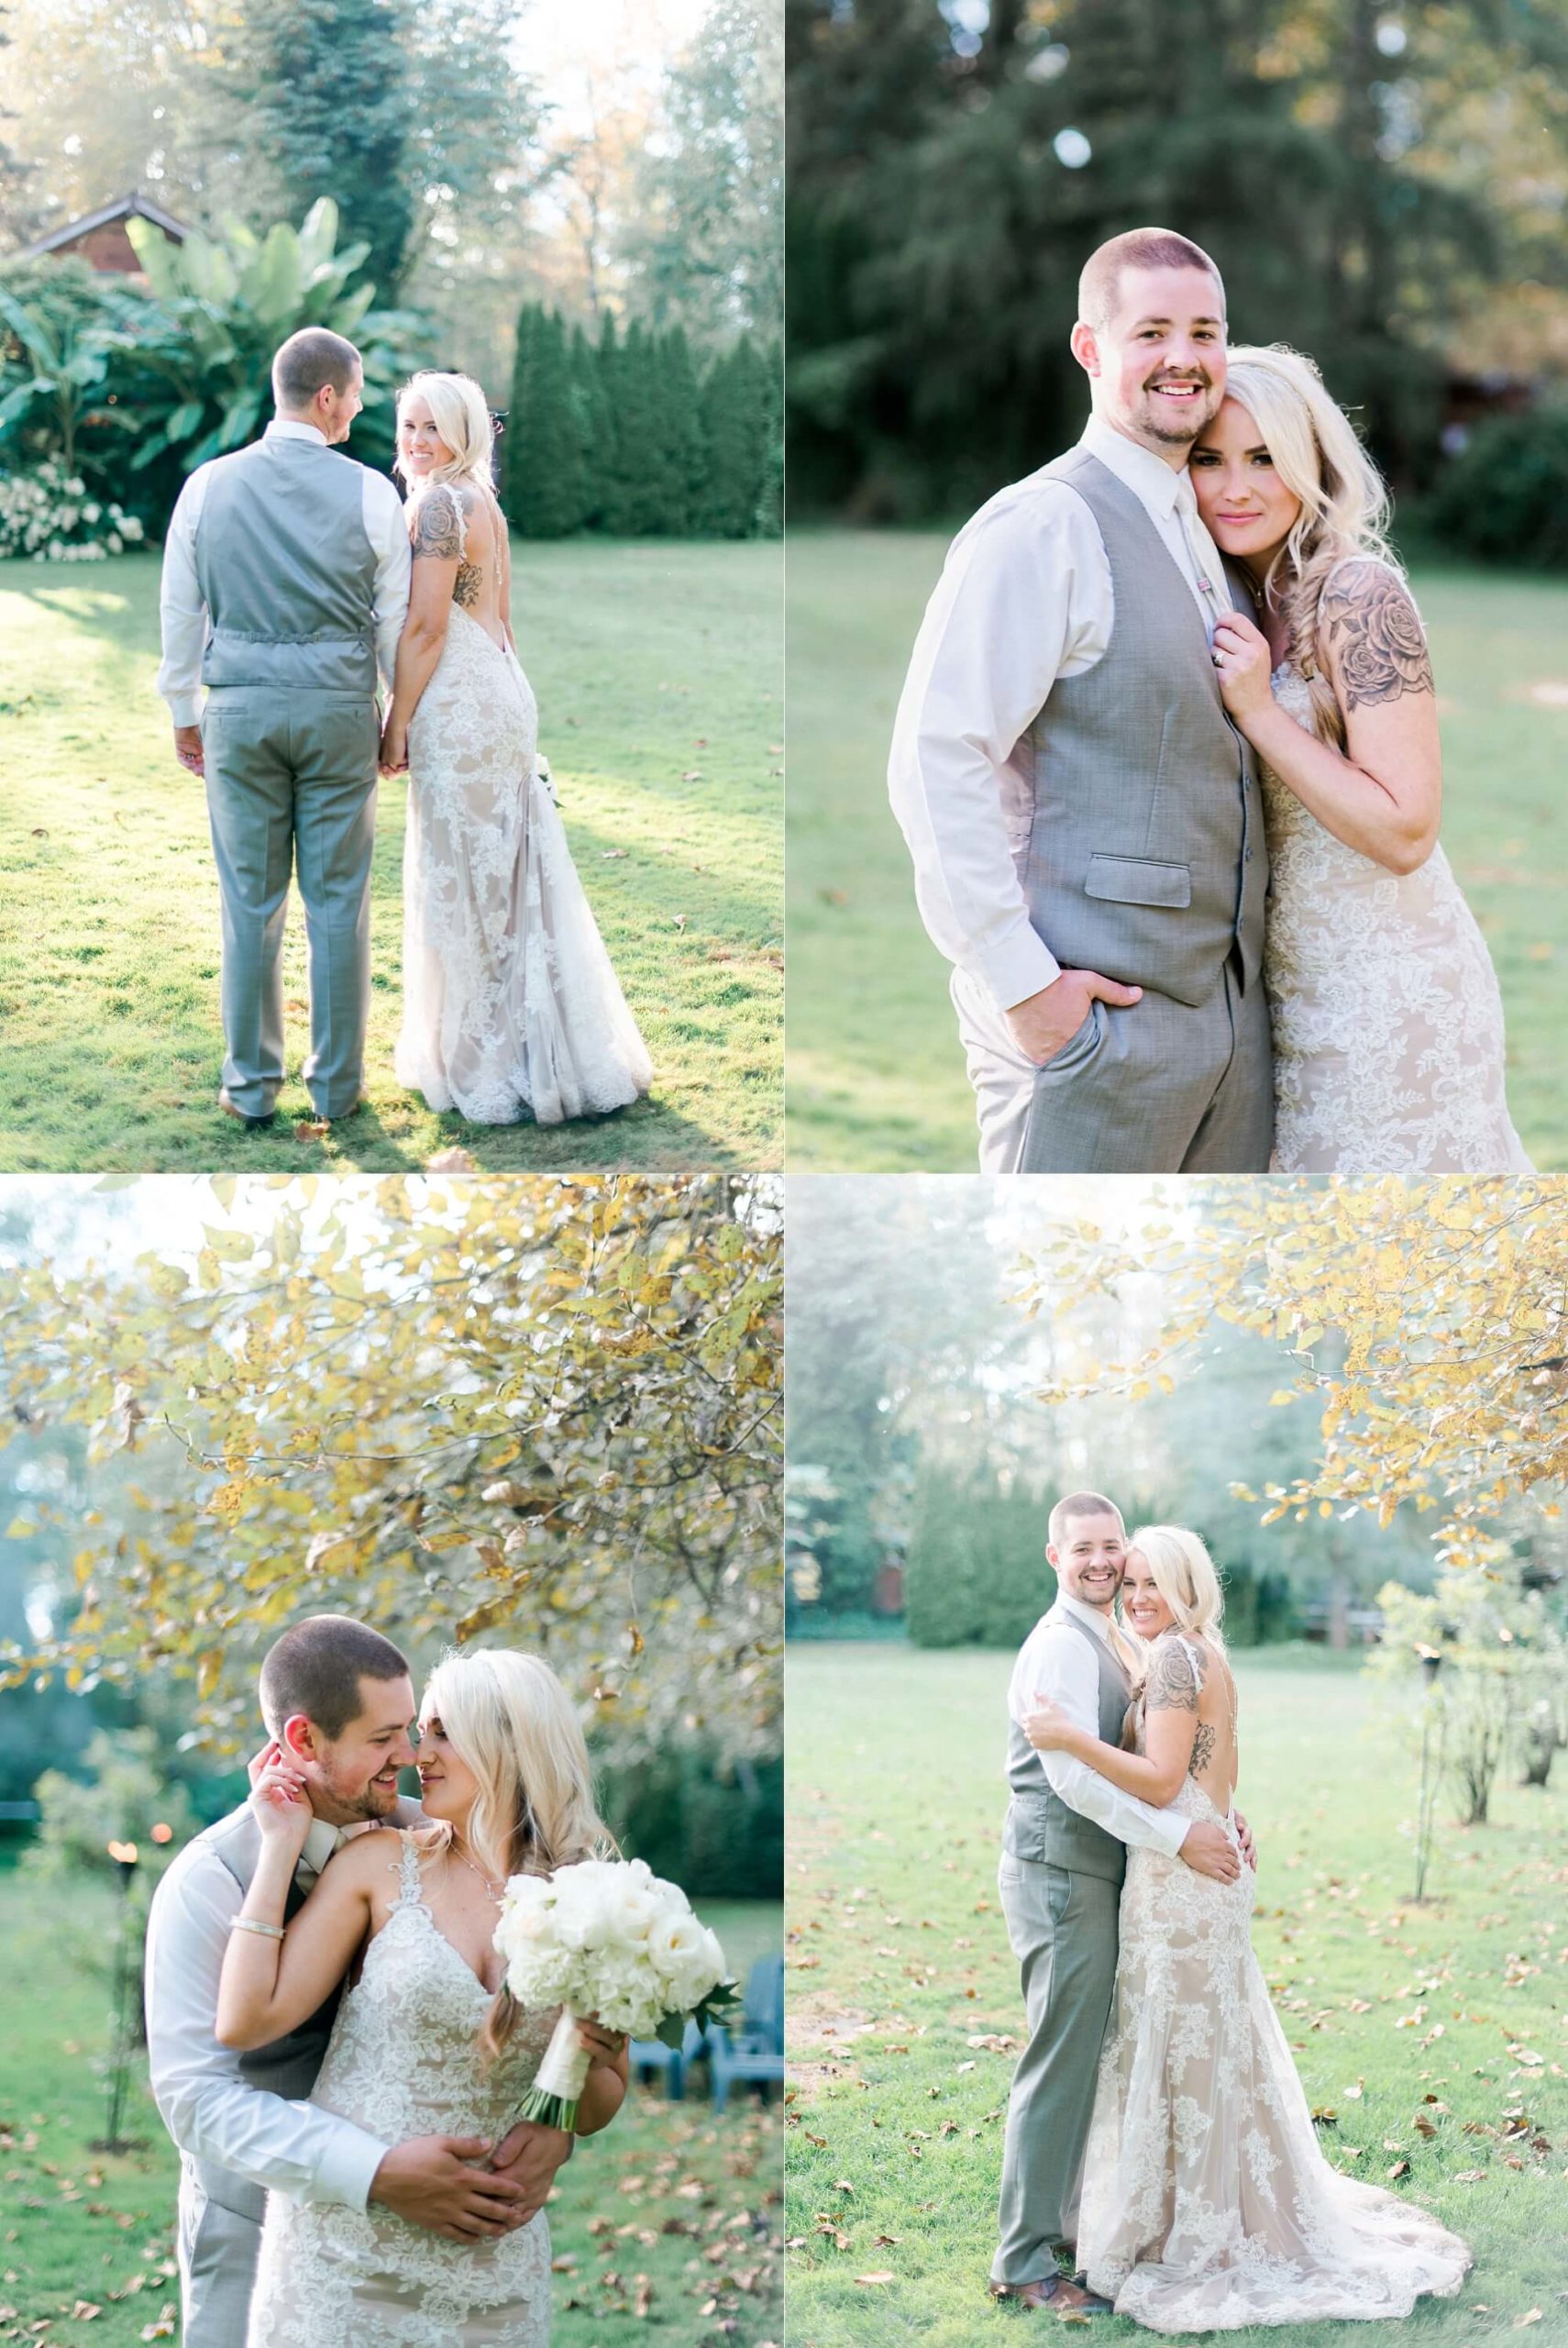 Maroni Meadows Wedding Photo Ideas